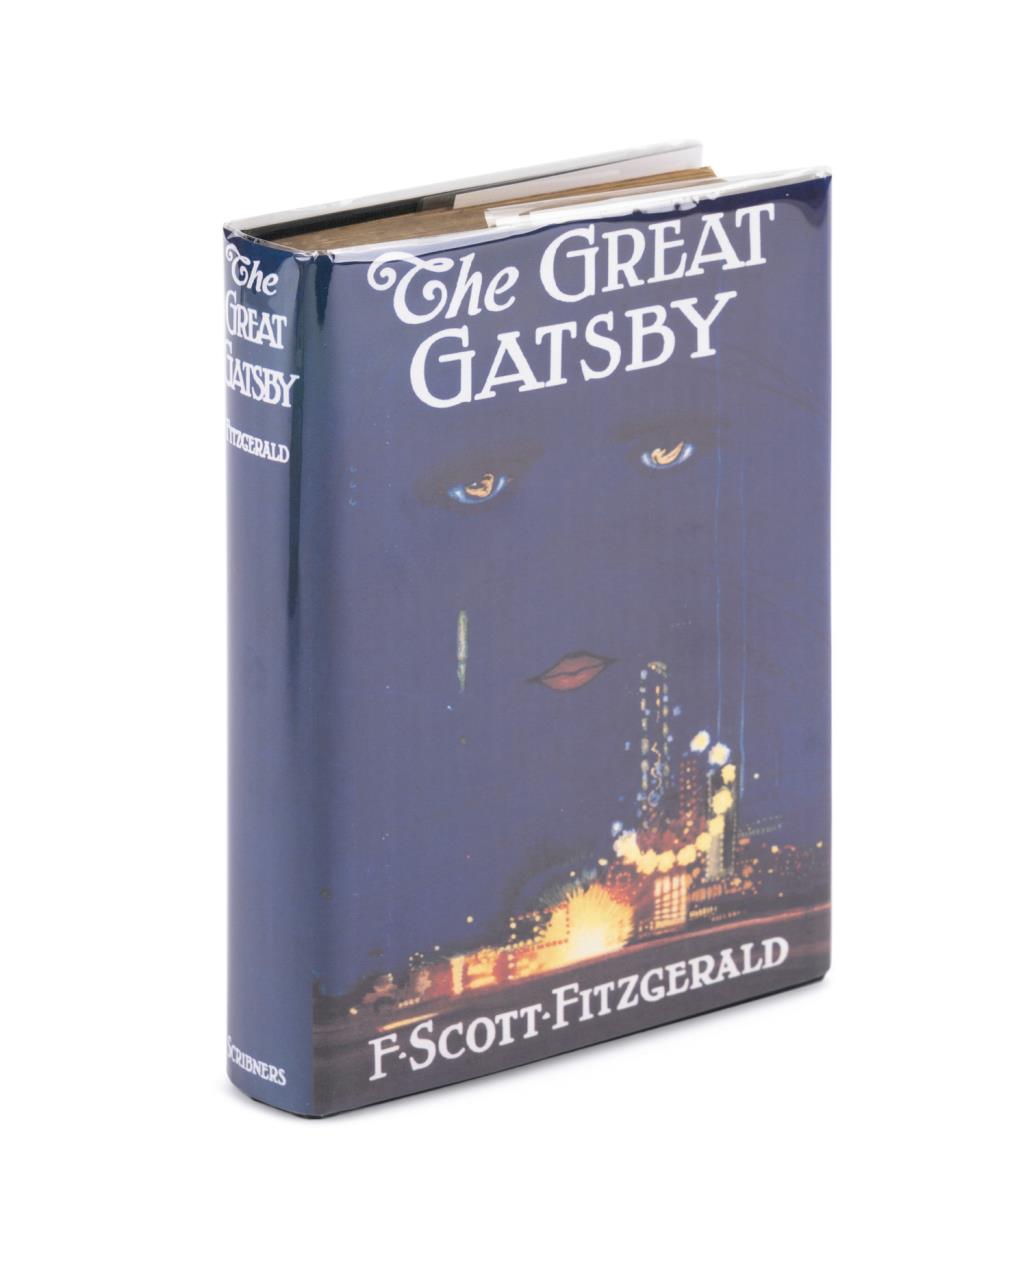 F. SCOTT FITZGERALD, 'GREAT GATSBY',